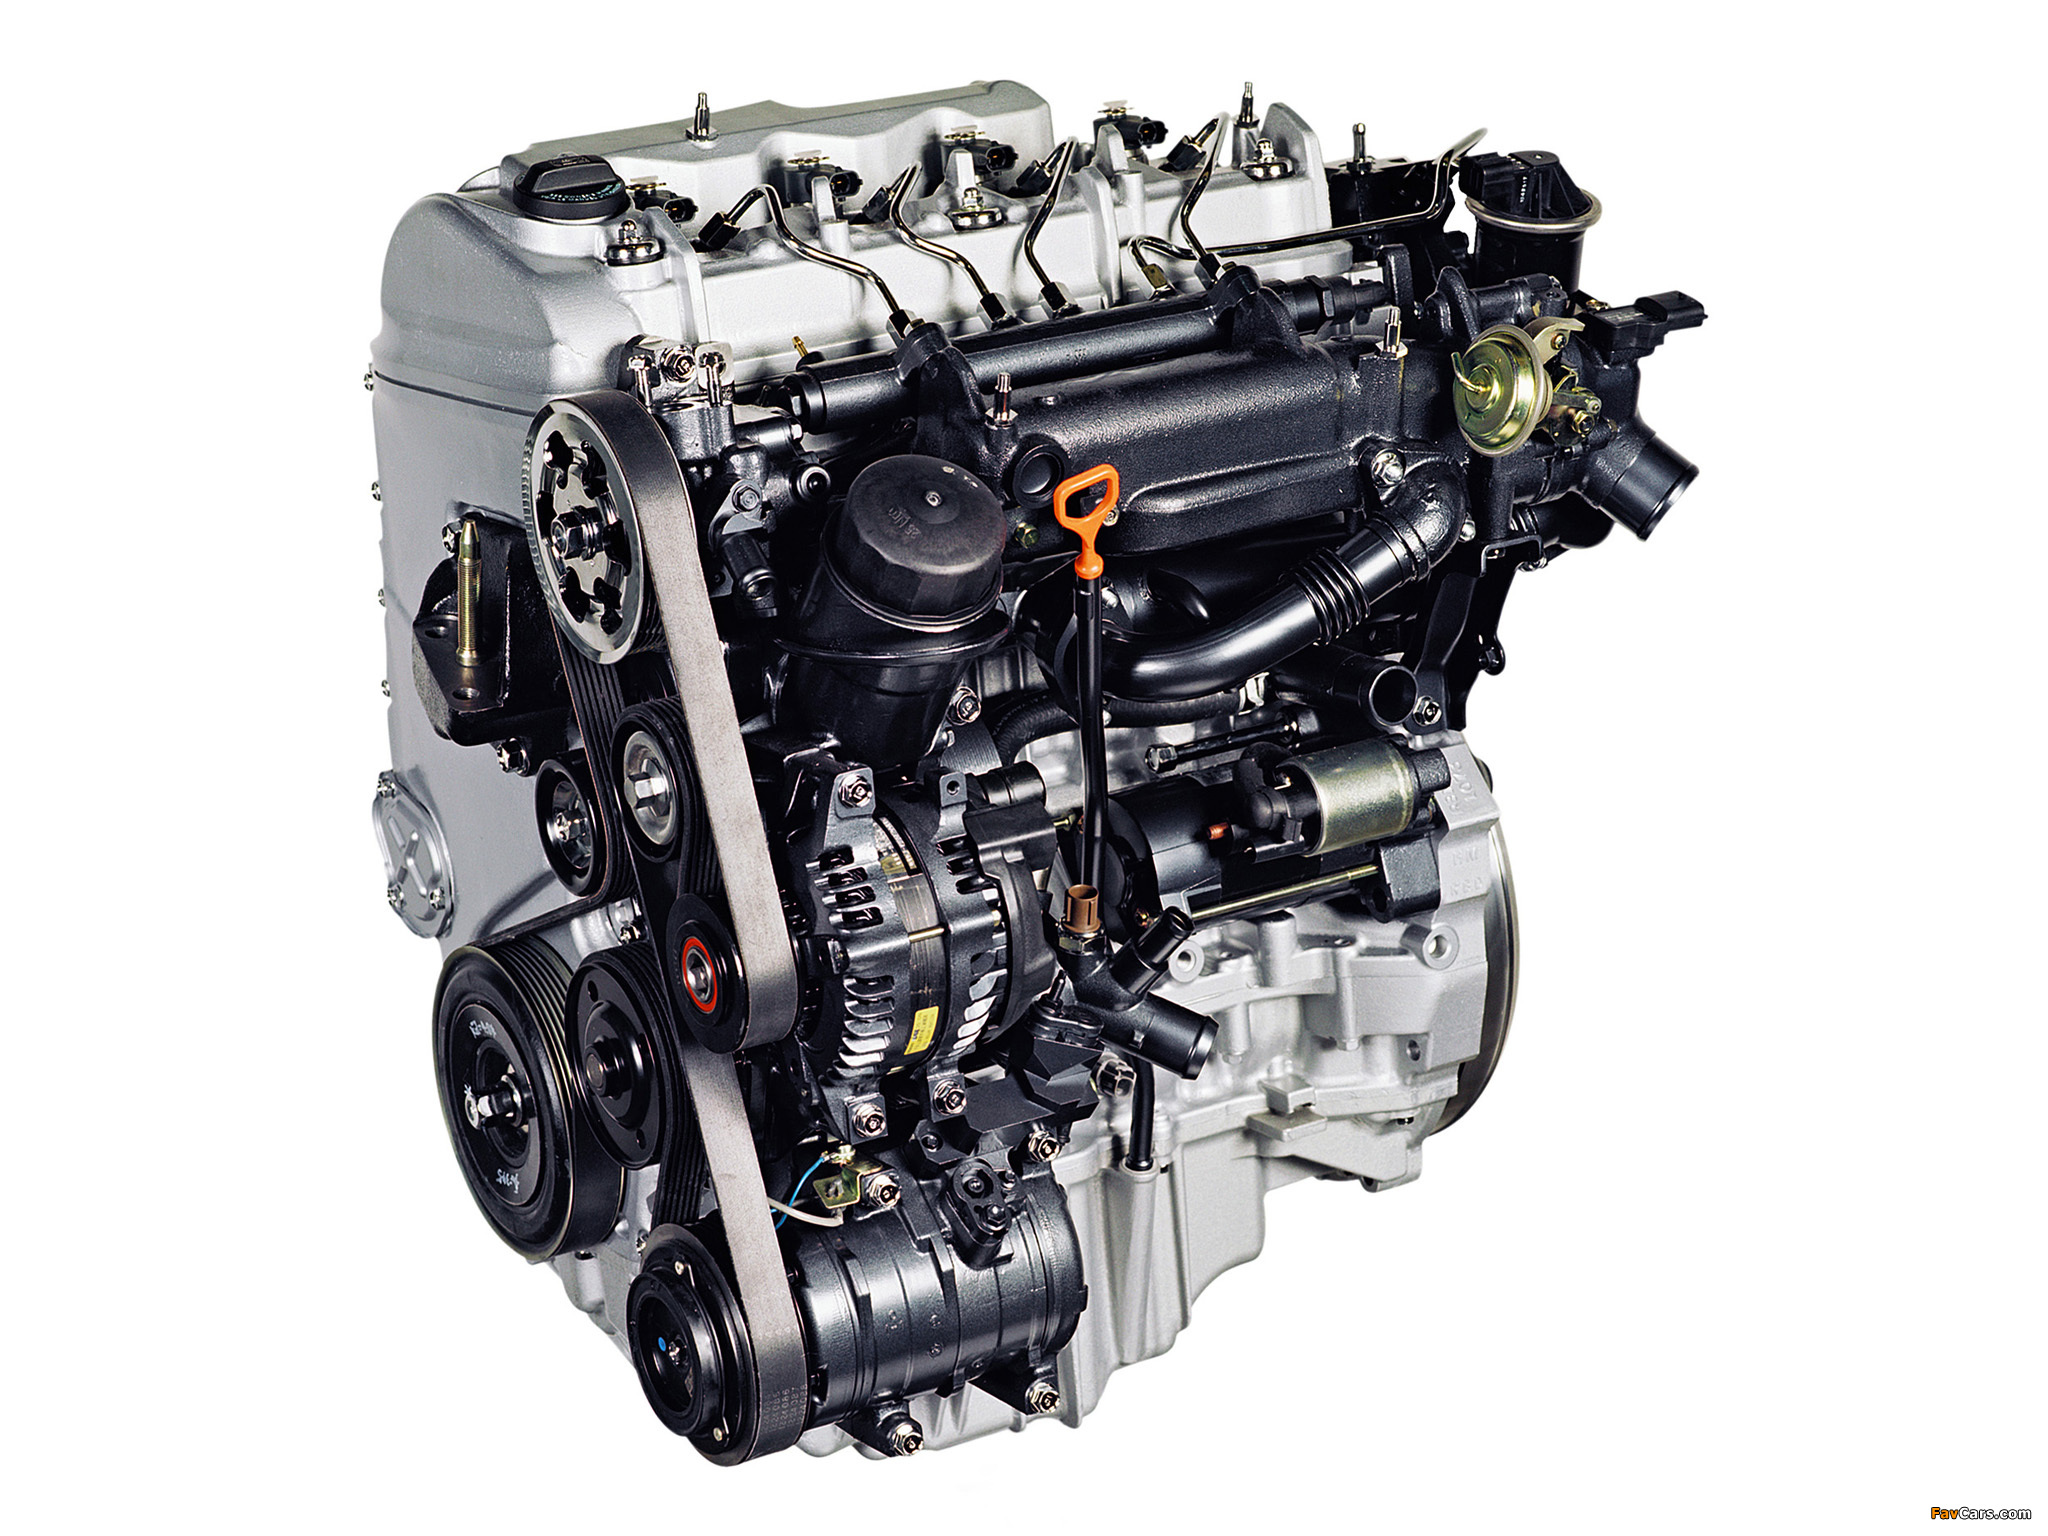 2.2 л 150 л с дизель. Двигатель Honda 2.2 i-CTDI n22a. Honda 2.2 i-CDTI (n22a1). Двигатель Исудзу 2.2 дизель. Honda CR V 2.2 dizel Motor.